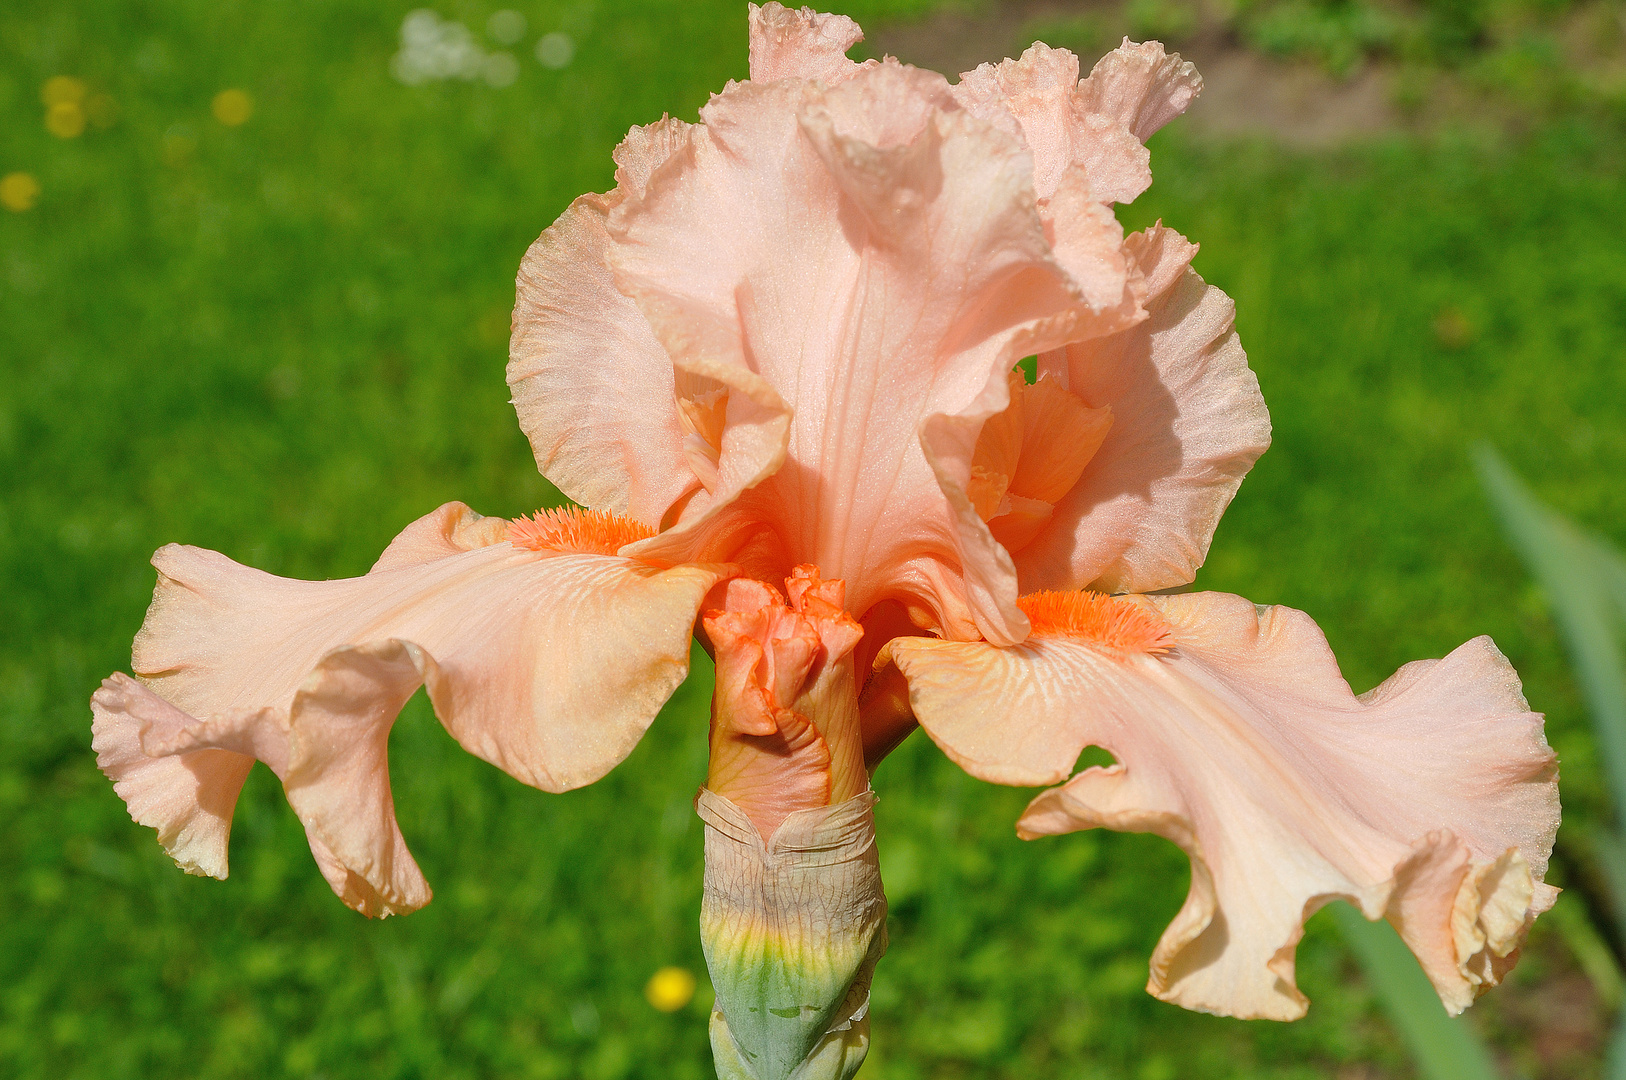 Lachsfarbene Iris